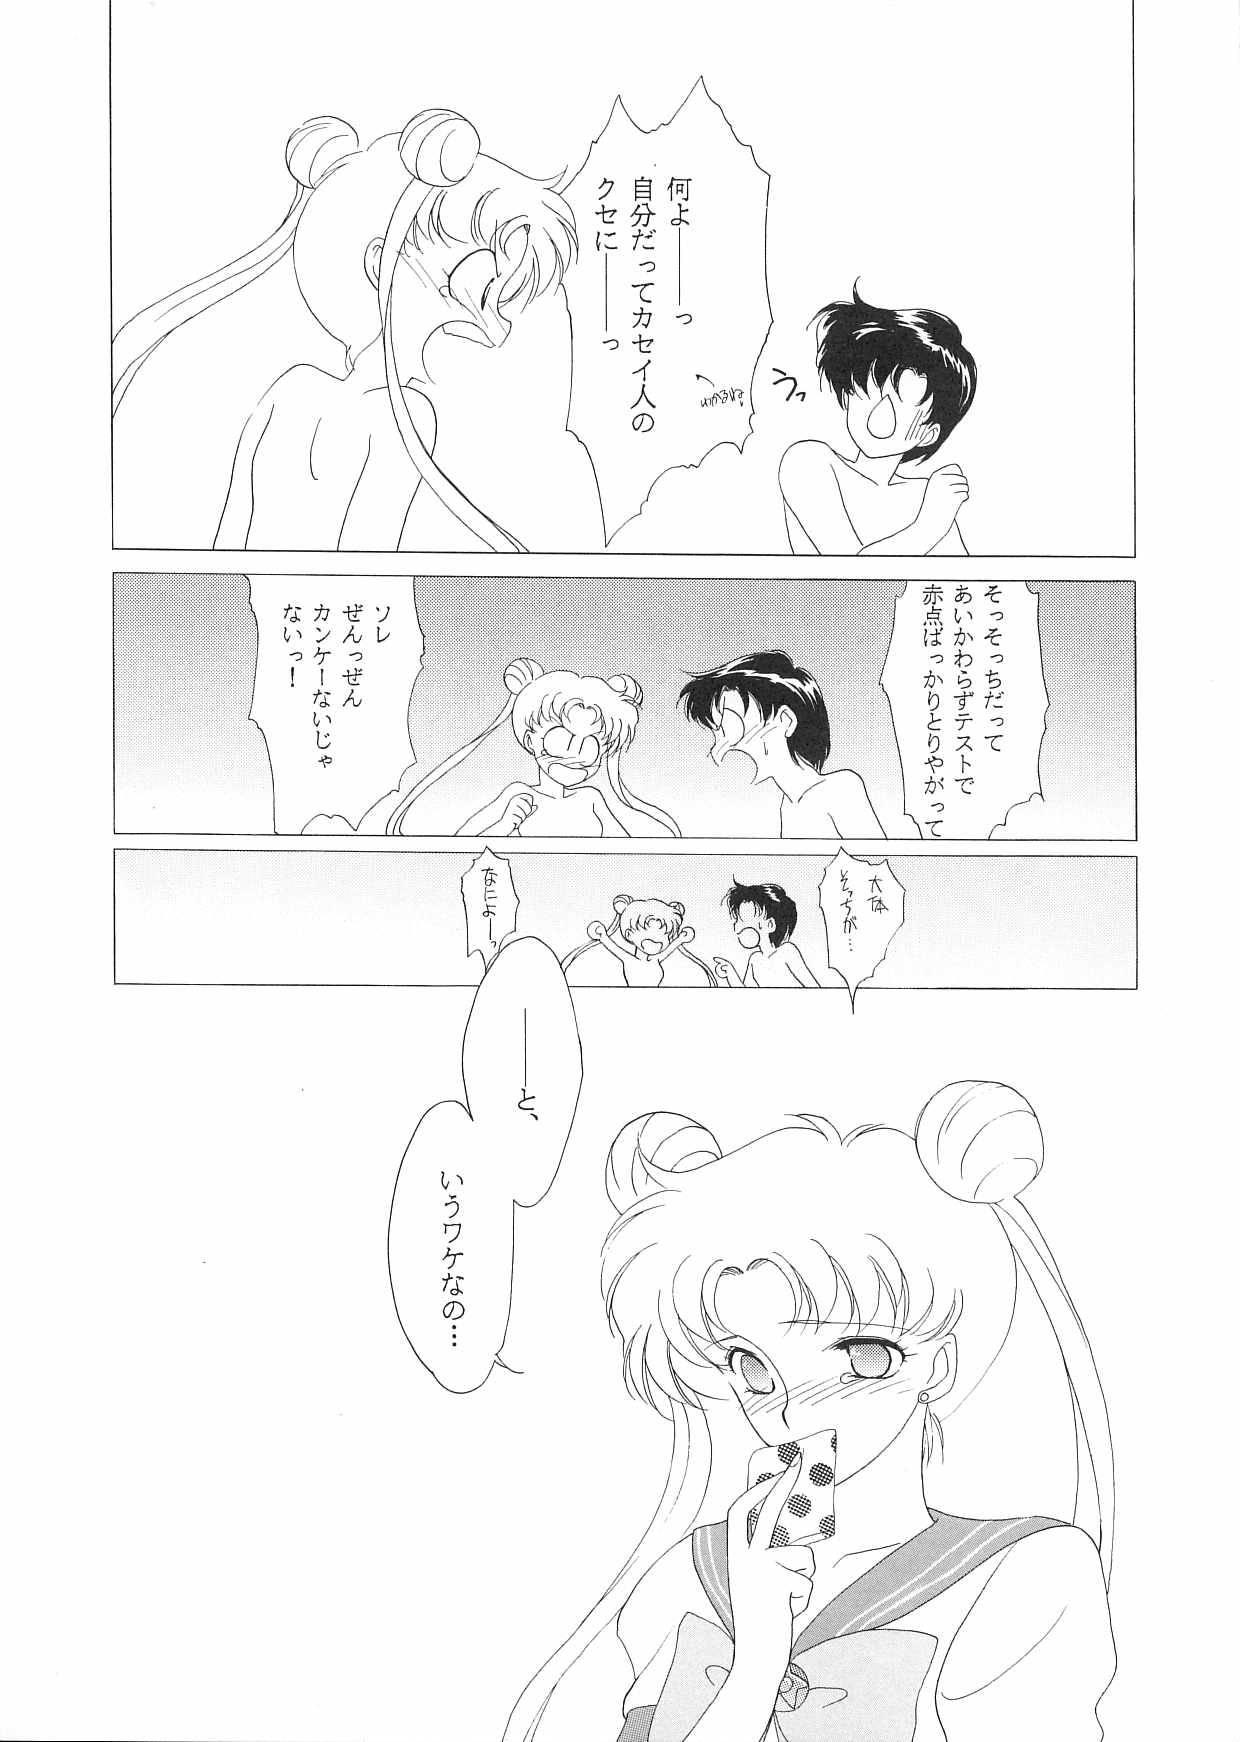 Culito Pretty Soldier Sailor Moon F - Sailor moon Spycam - Page 12